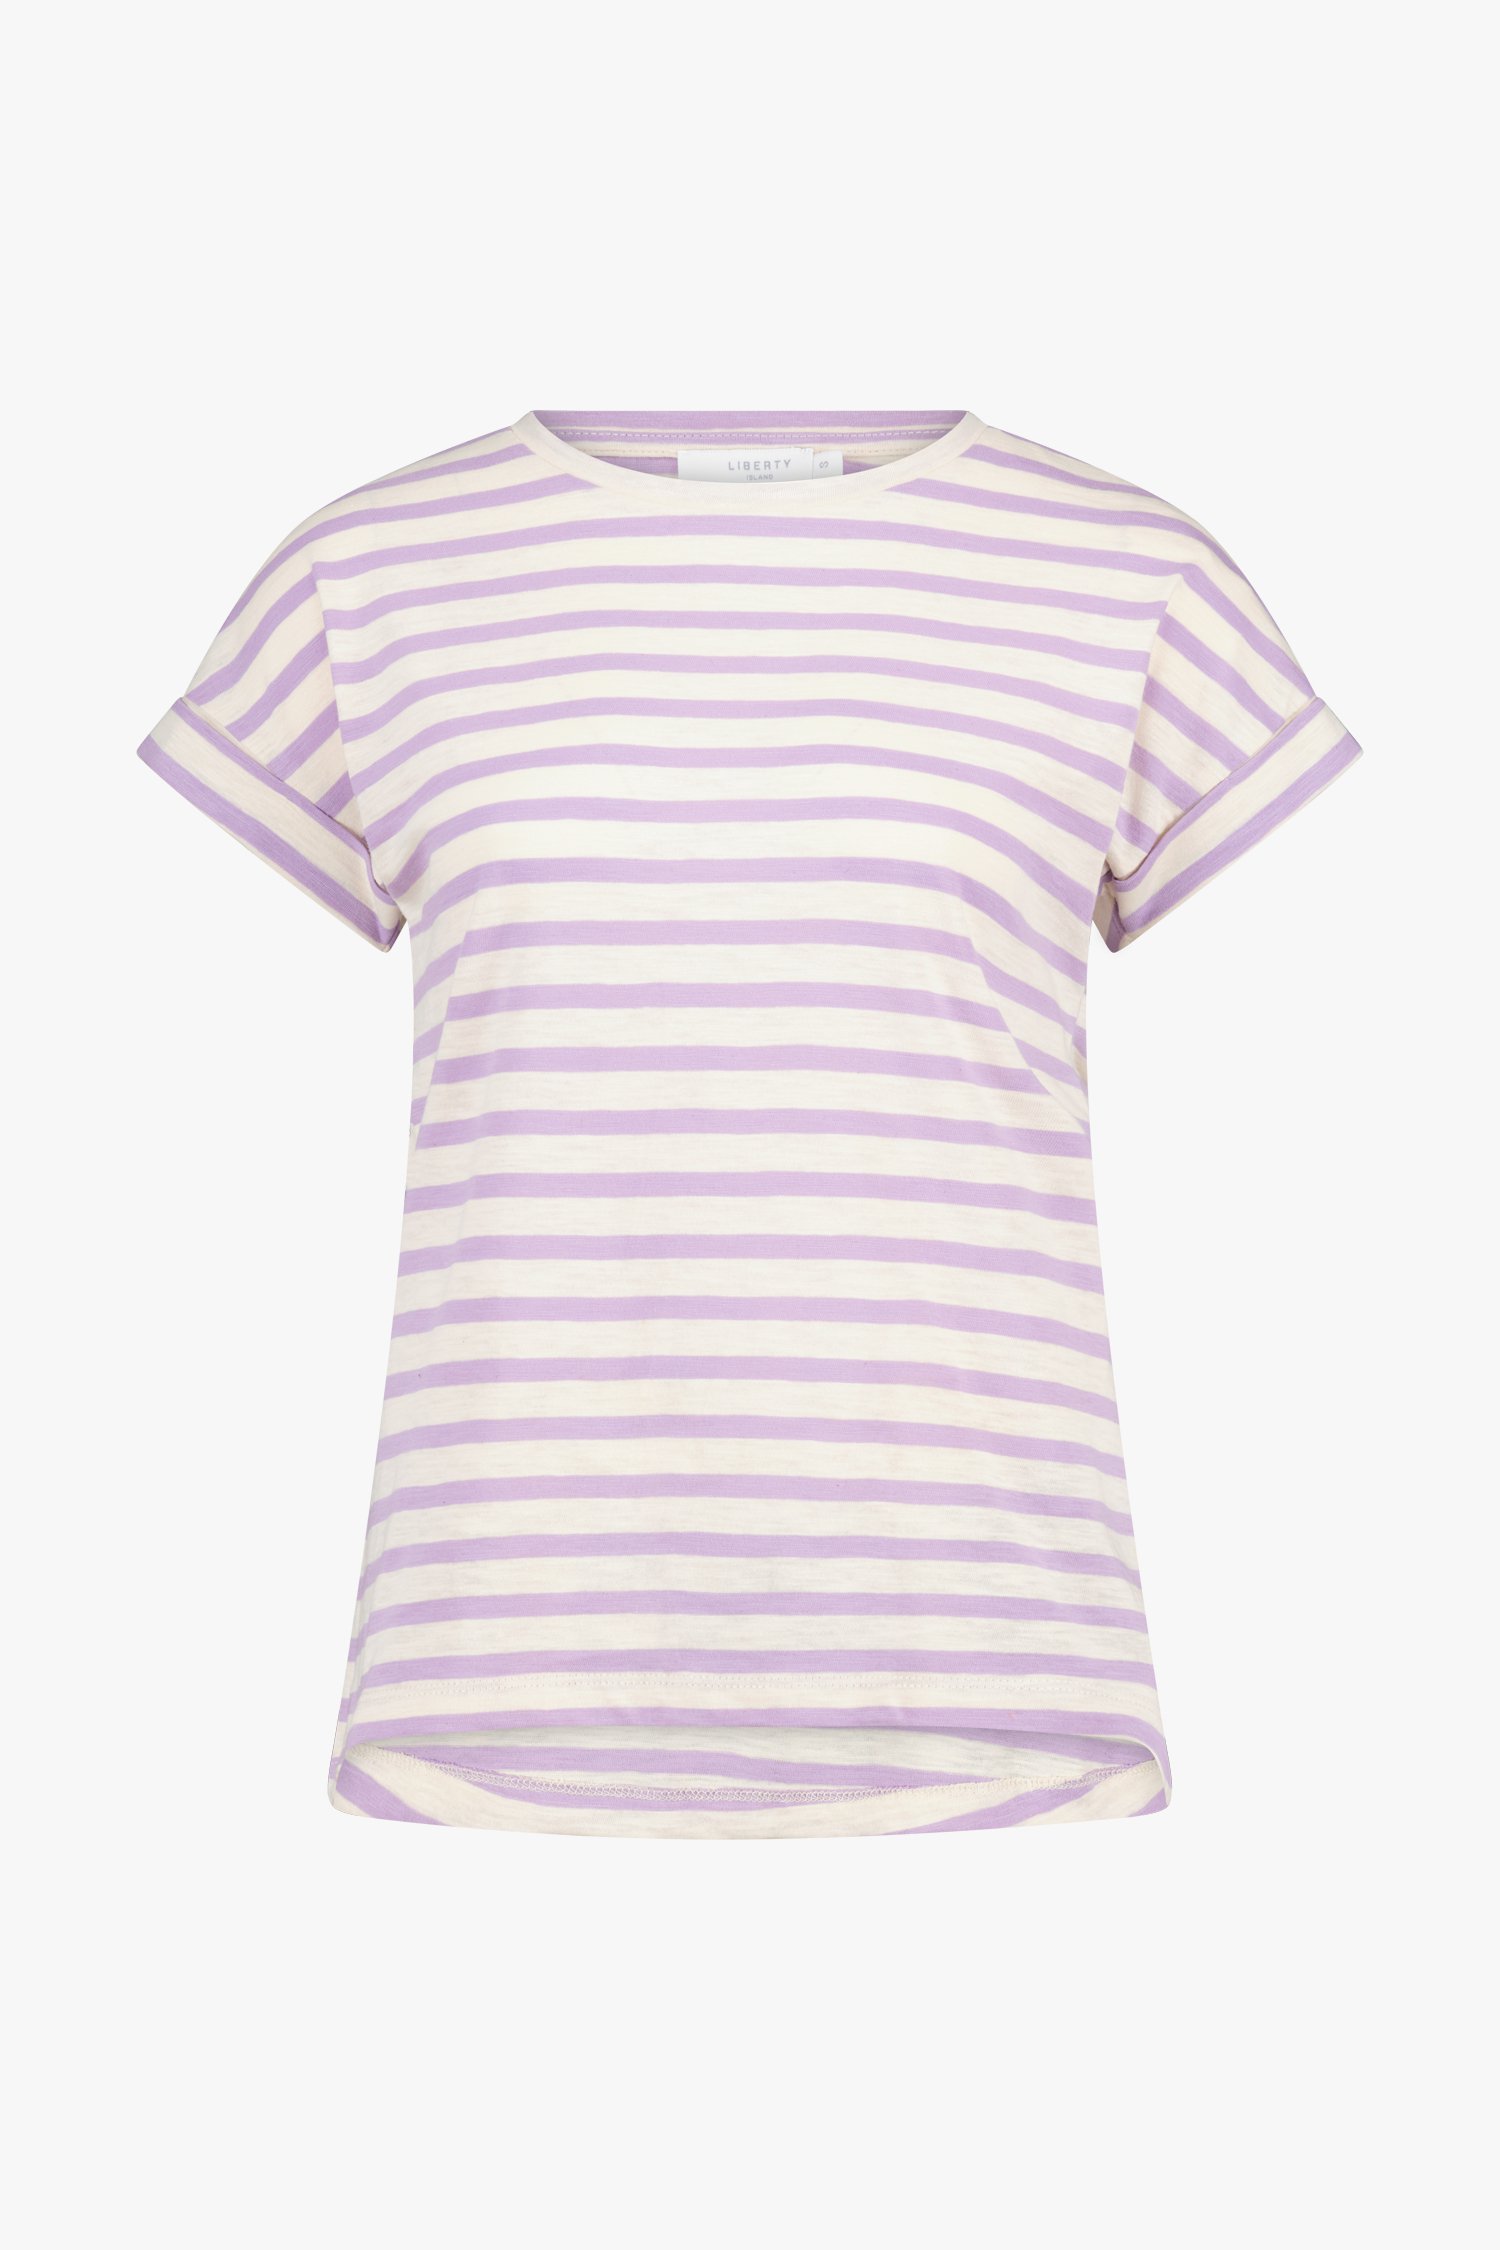 Gestreept T-shirt in ecru en lichtpaars van Liberty Island voor Dames